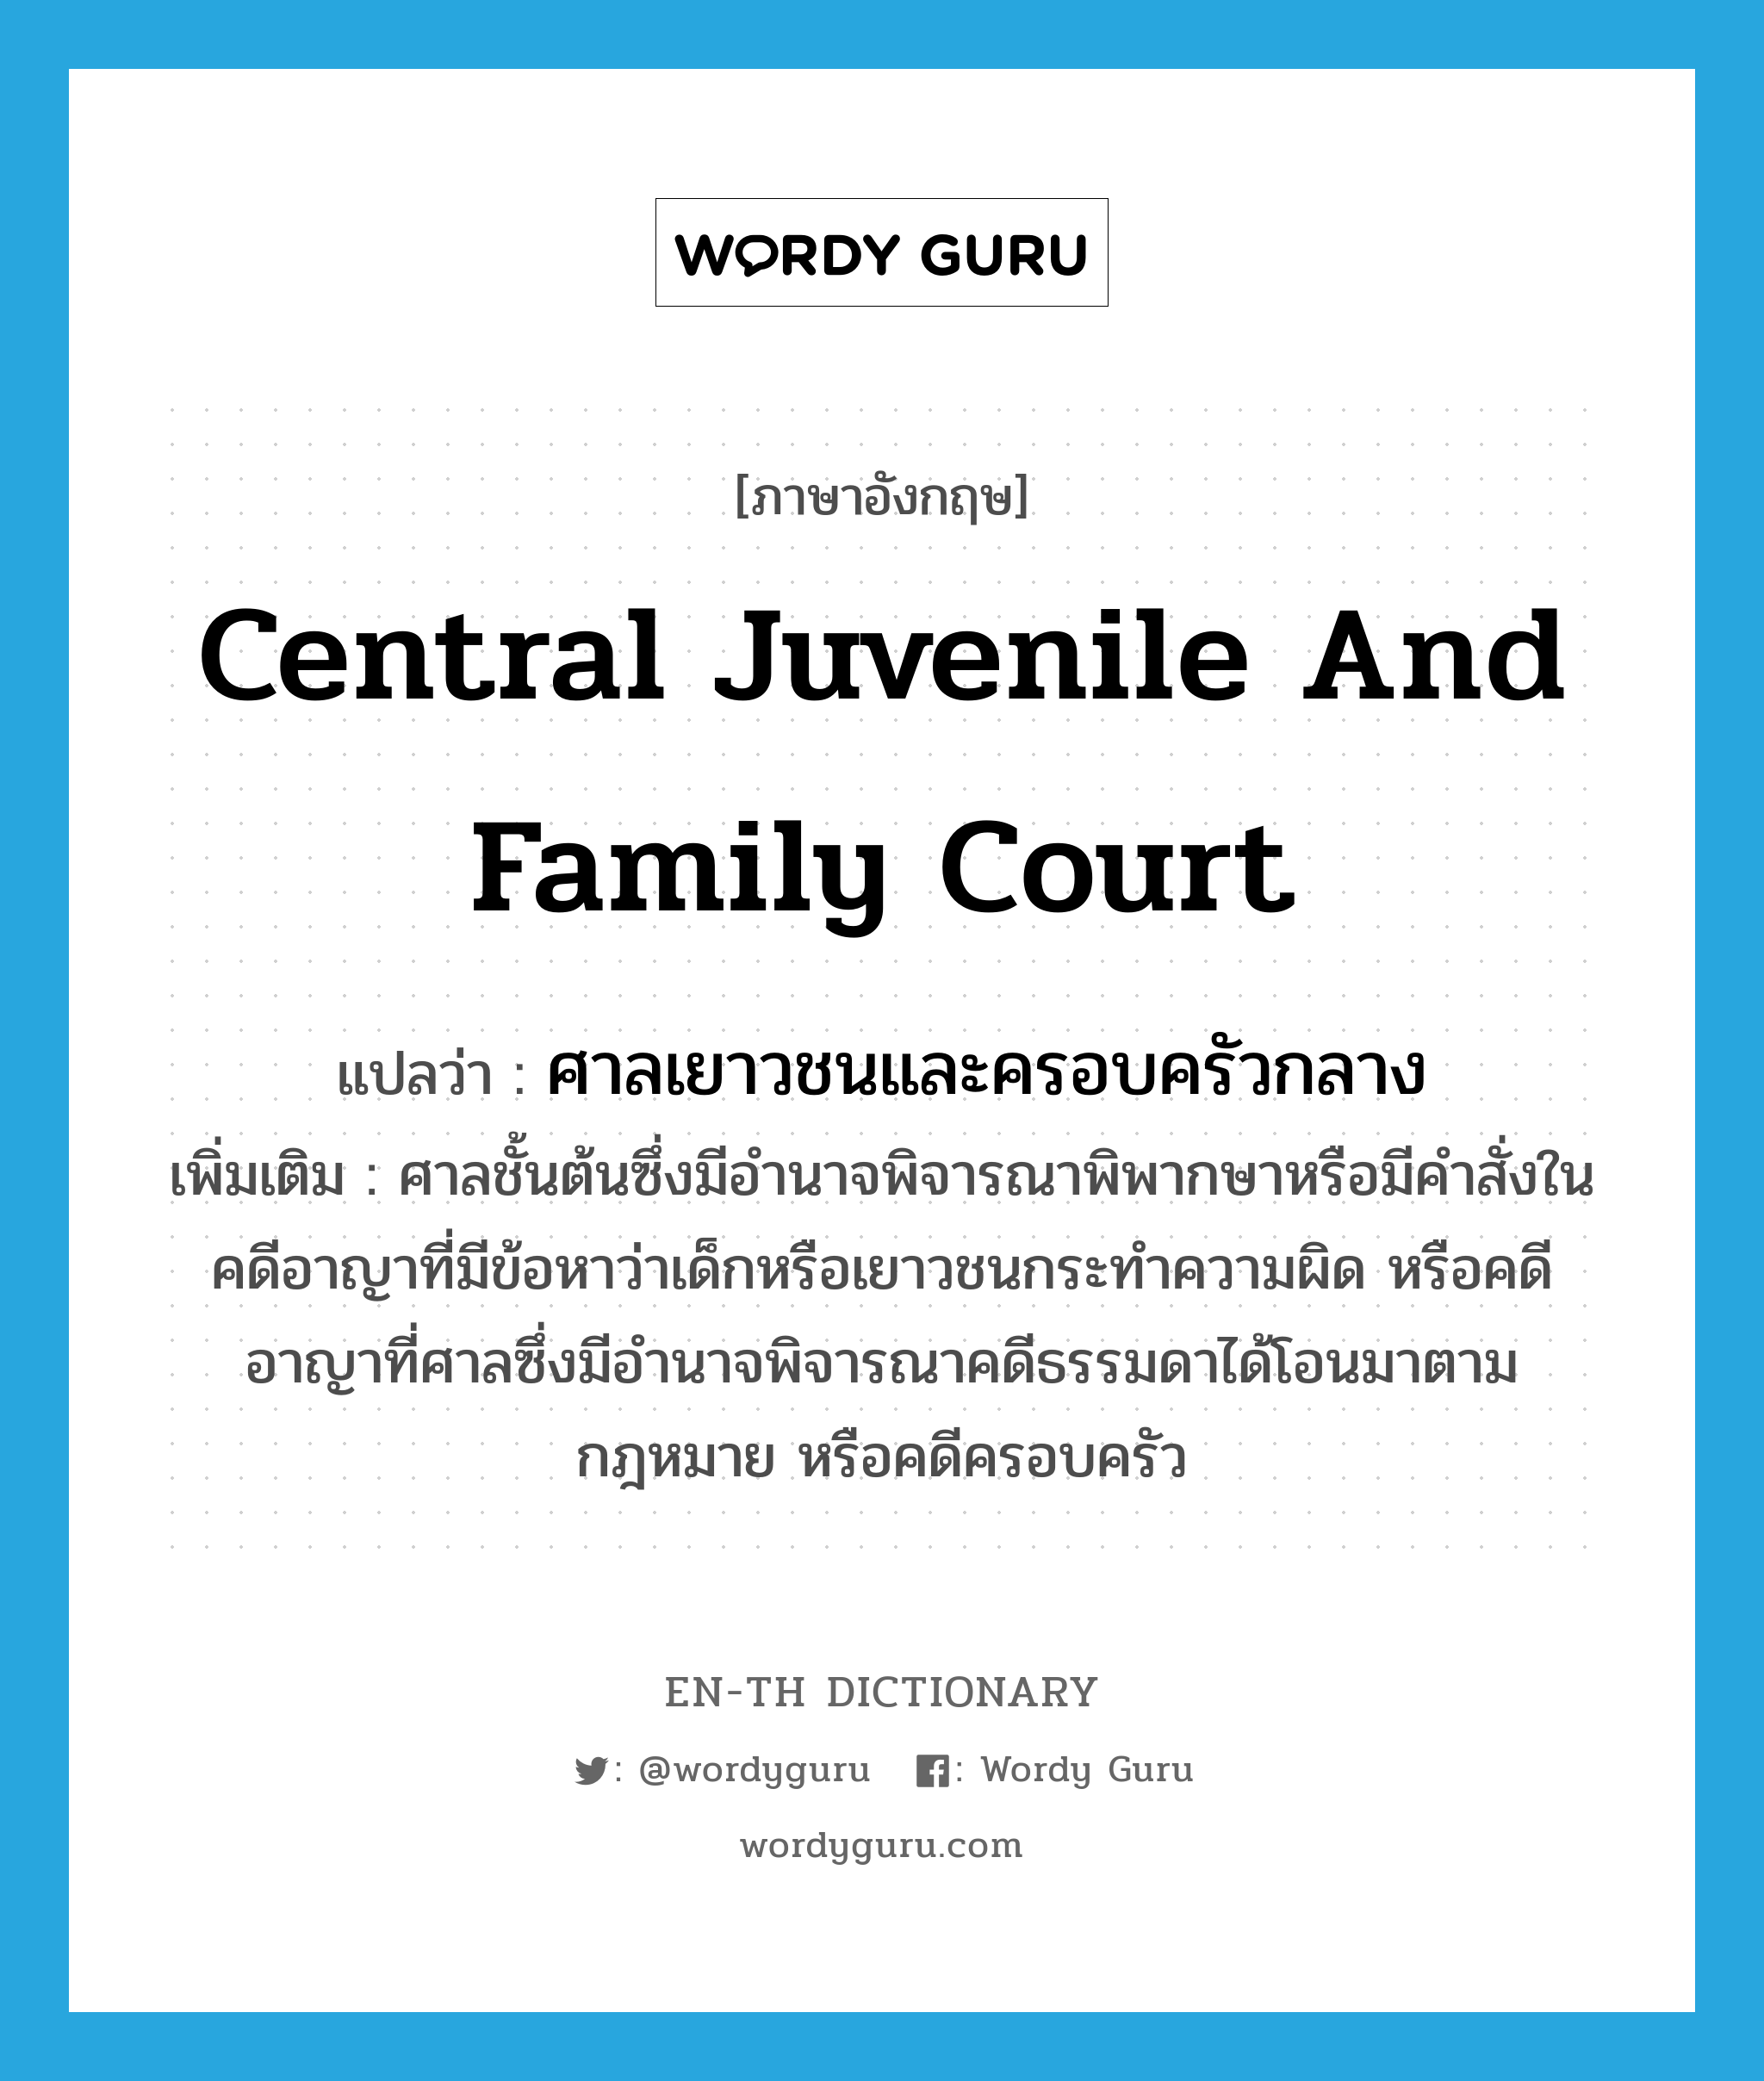 Central Juvenile and Family Court แปลว่า?, คำศัพท์ภาษาอังกฤษ Central Juvenile and Family Court แปลว่า ศาลเยาวชนและครอบครัวกลาง ประเภท N เพิ่มเติม ศาลชั้นต้นซึ่งมีอำนาจพิจารณาพิพากษาหรือมีคำสั่งในคดีอาญาที่มีข้อหาว่าเด็กหรือเยาวชนกระทำความผิด หรือคดีอาญาที่ศาลซึ่งมีอำนาจพิจารณาคดีธรรมดาได้โอนมาตามกฎหมาย หรือคดีครอบครัว หมวด N